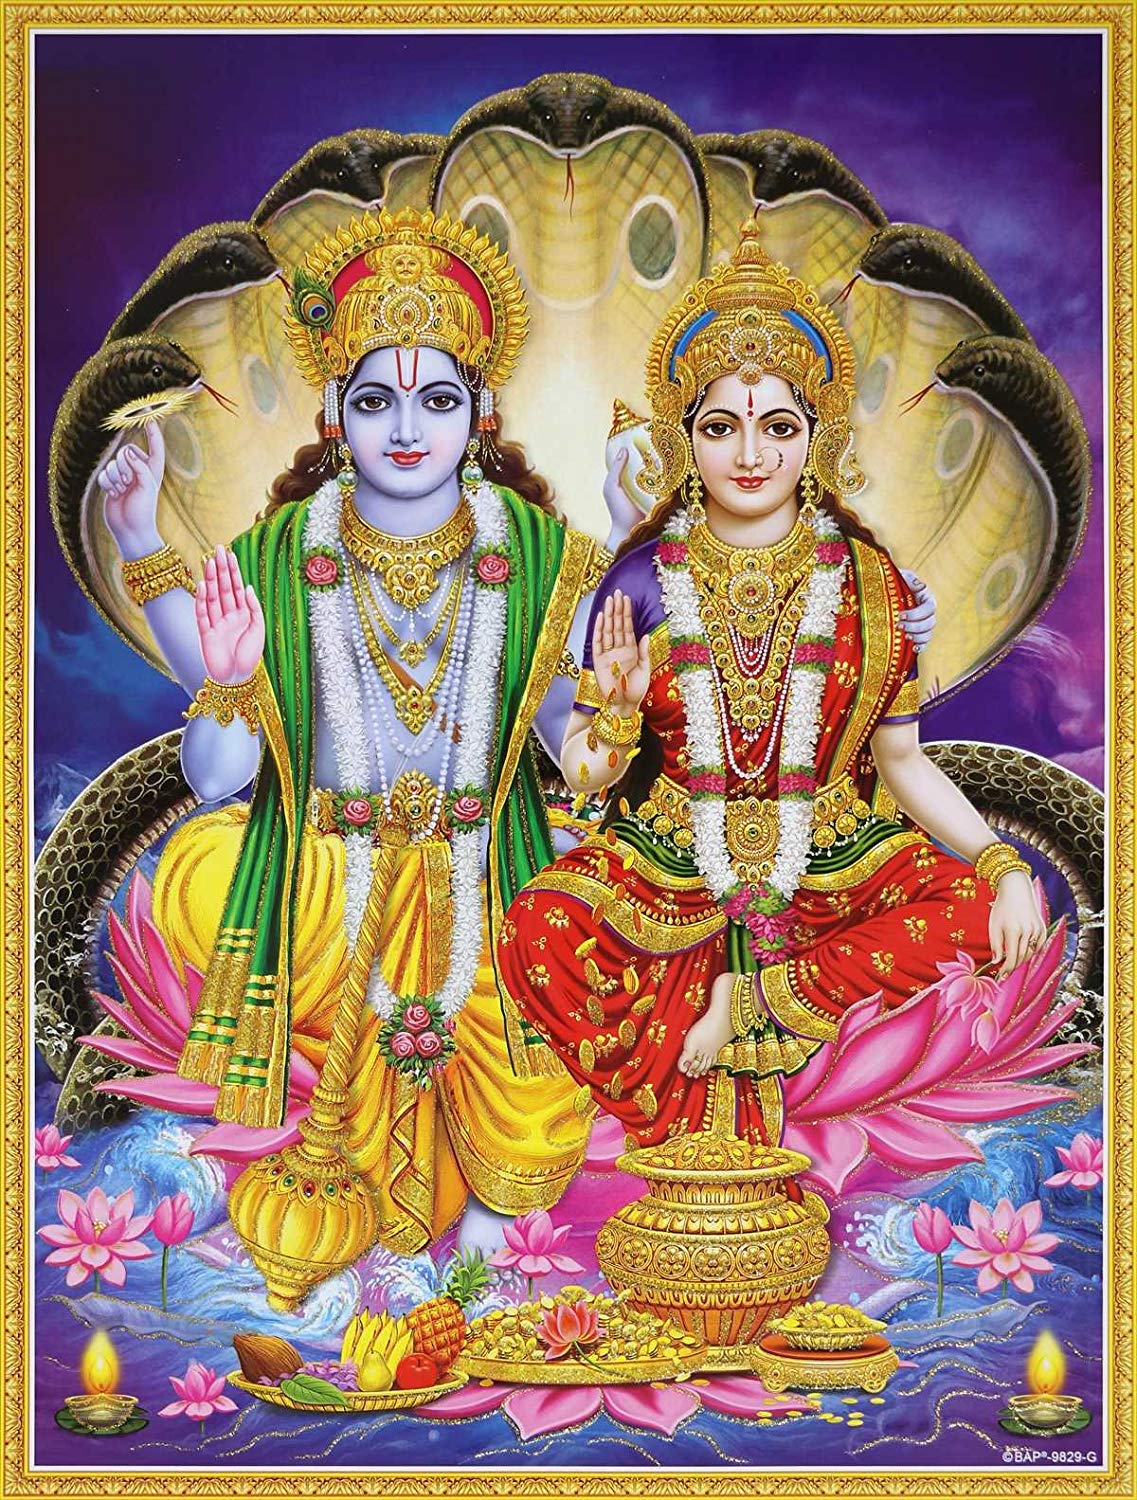 Lord Vishnu And Lakshmi - 1137x1500 Wallpaper - teahub.io